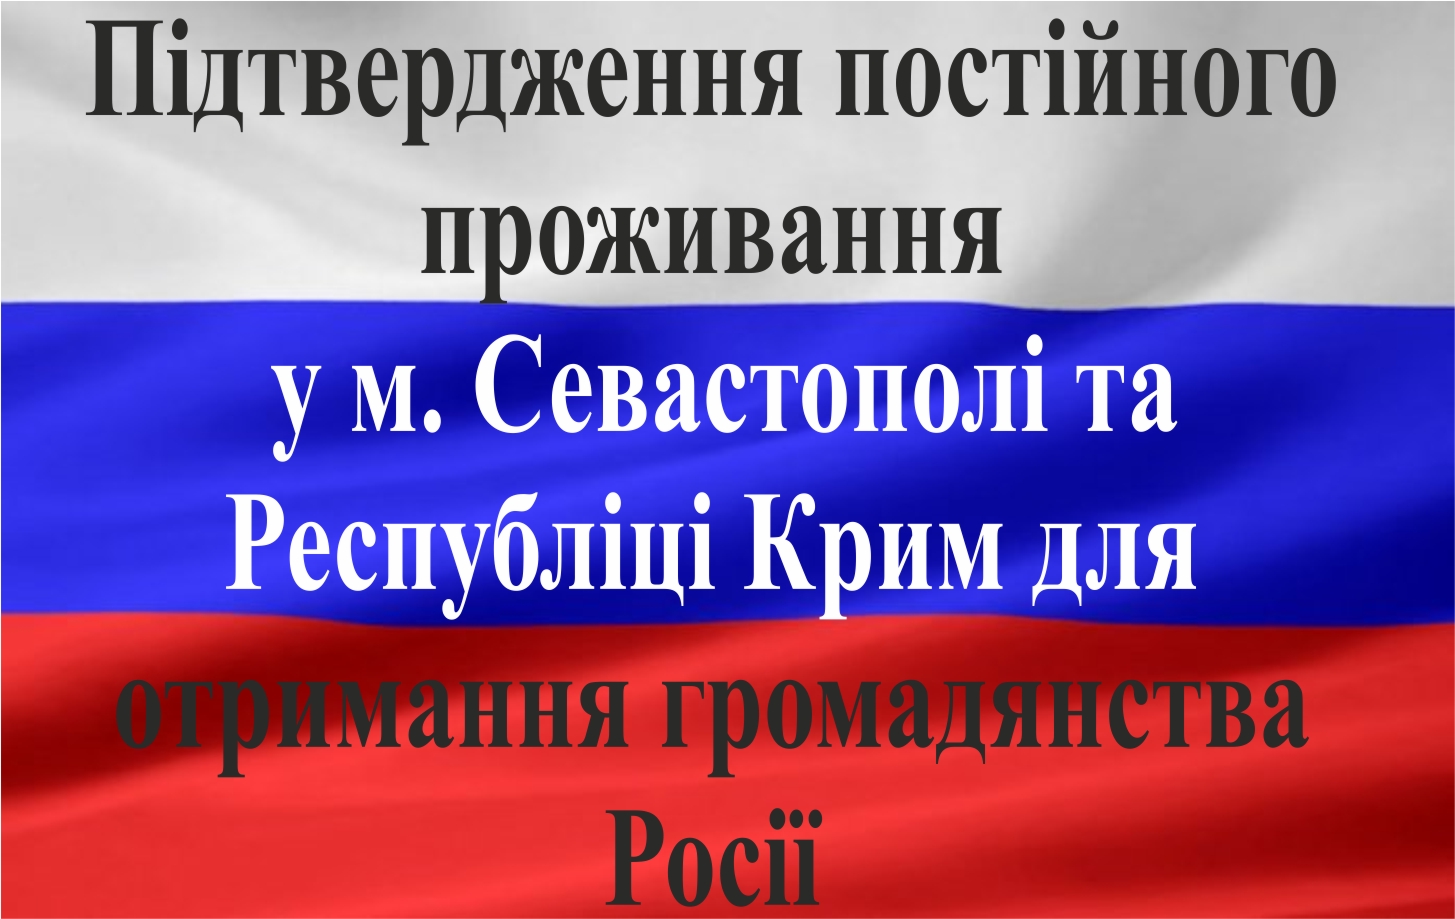 Підтвердження постійного проживання у м. Севастополі та Республіці Крим 